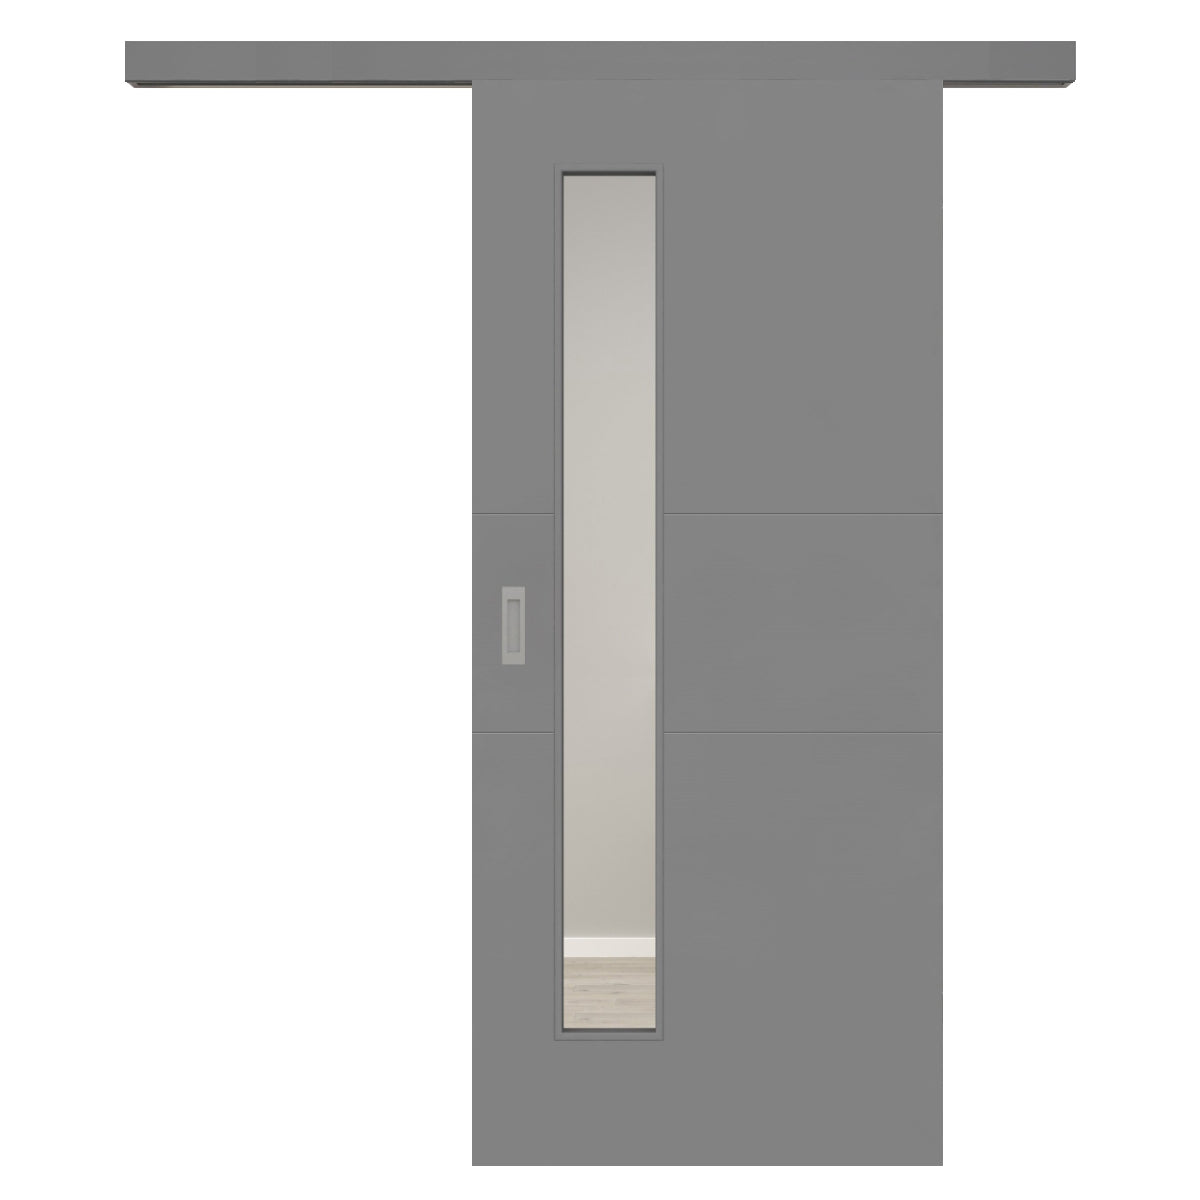 Schiebetür für Set mit grauem Laufkasten mit Lichtausschnitt grau 2 Rillen quer - Modell Designtür Q27LAS